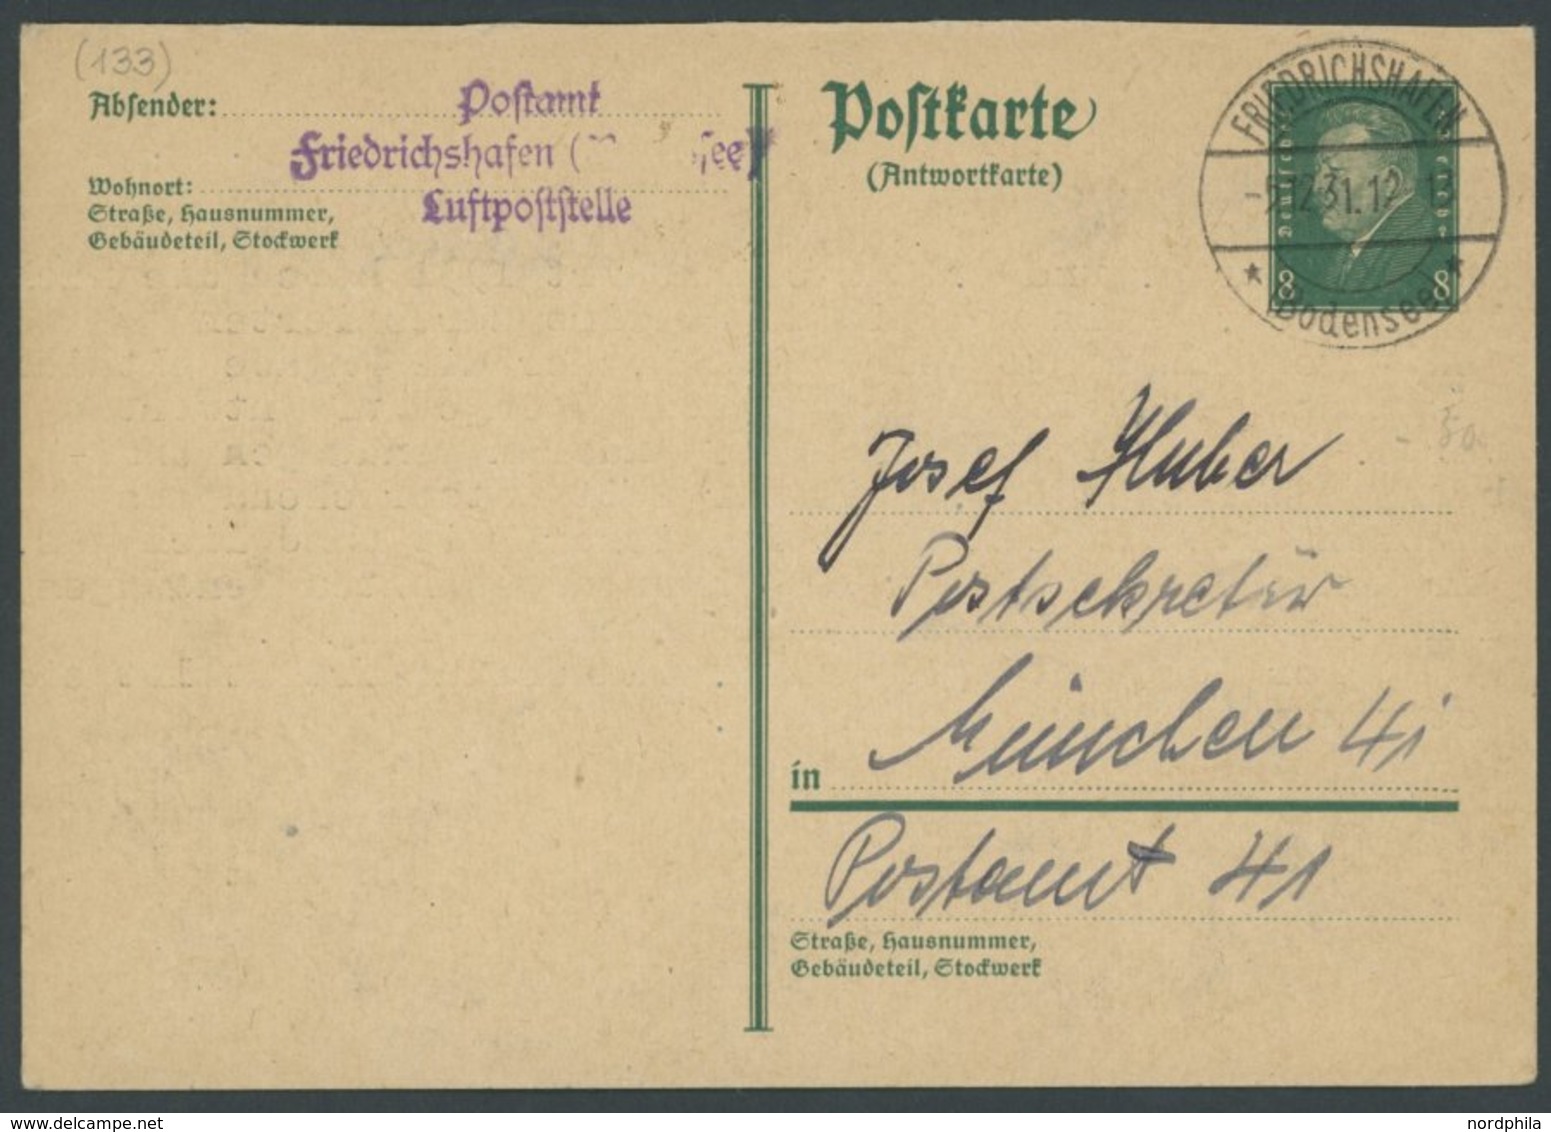 ZEPPELINPOST 1931, Friedrichshafen Luftpostelle: Antwortkarte Mit Ablehnung Einer Nachträglichen Anbringung Des Zeppelin - Zeppelines